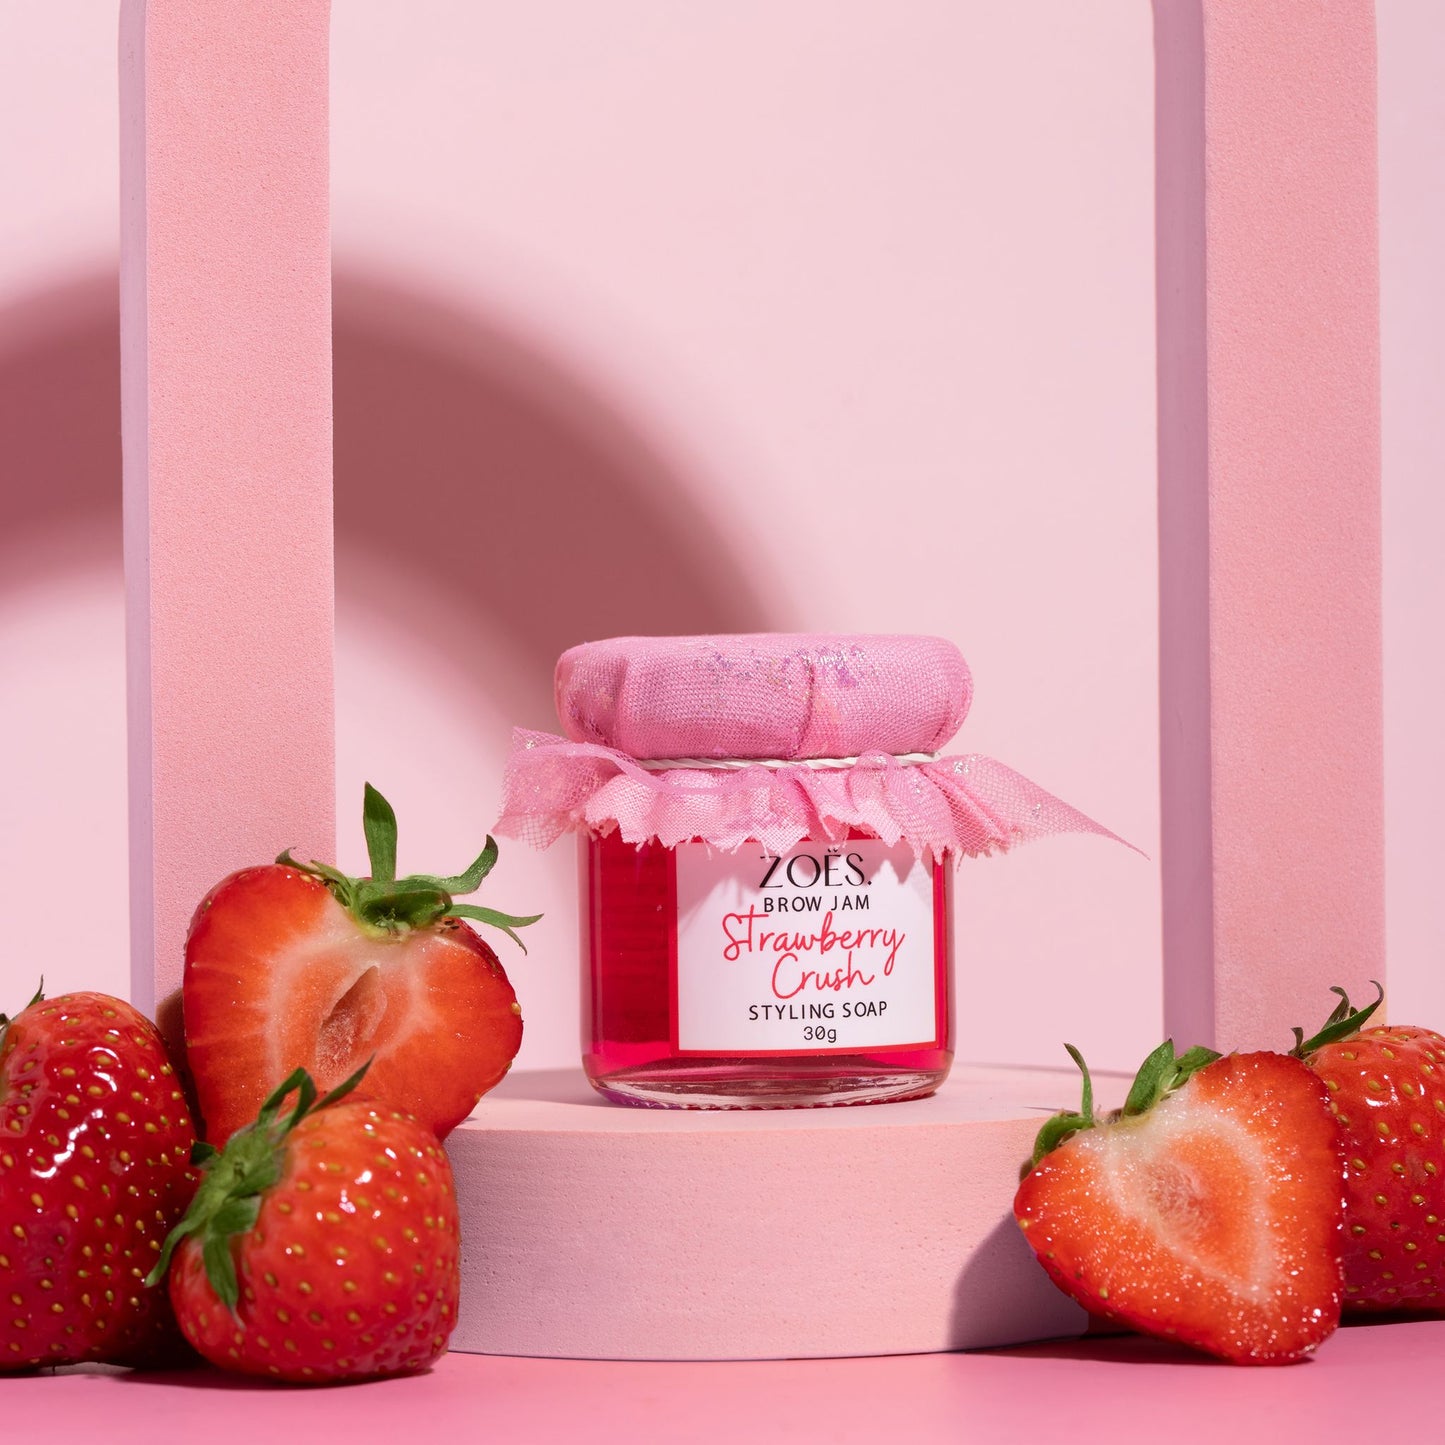 Brow jam - Strawberry crush